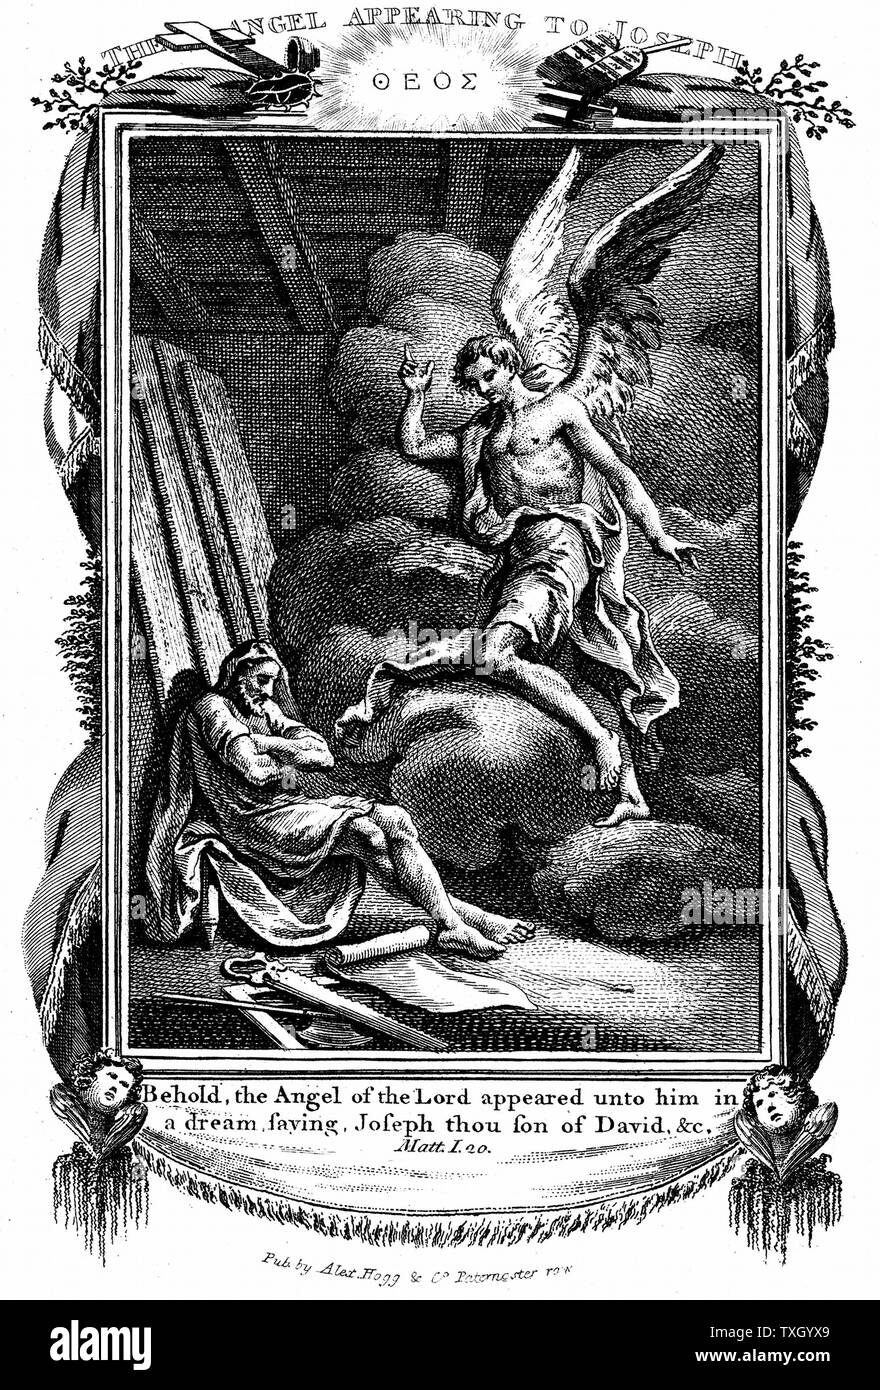 Joseph's dream. 'Voici, l'Ange du Seigneur lui apparut dans un rêve' 'bible' Matthieu I. la gravure sur cuivre 1804 Banque D'Images